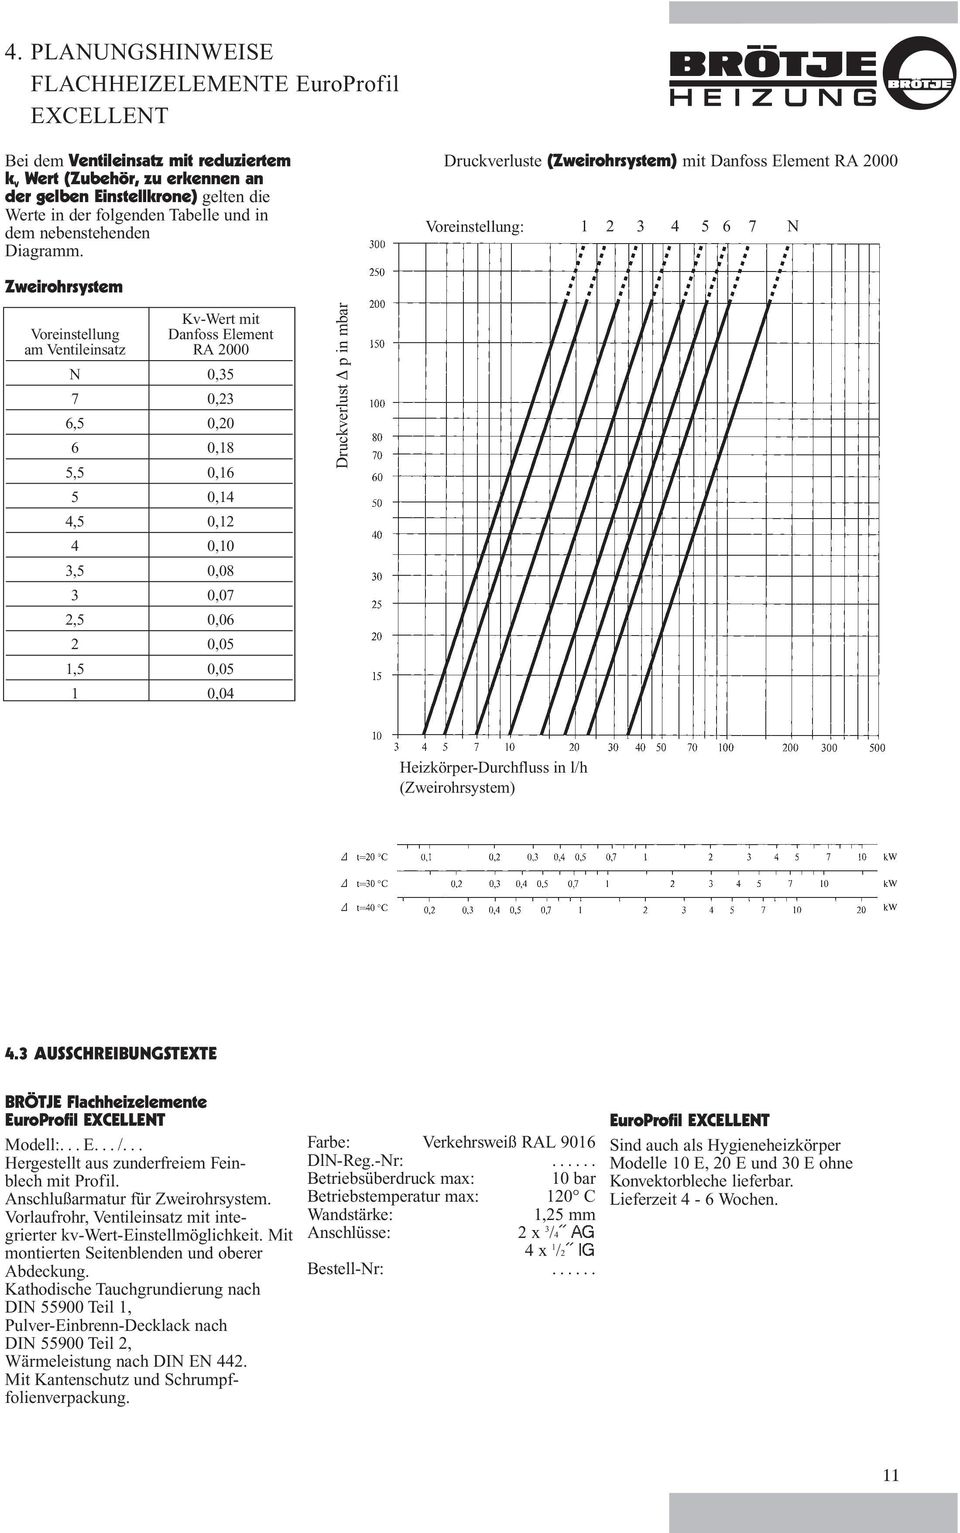 Druckverluste (Zweirohrsystem) mit Danfoss Element RA 2000 Voreinstellung: 1 2 3 4 5 6 7 N Zweirohrsystem Kv-Wert mit Voreinstellung Danfoss Element am Ventileinsatz RA 2000 N 0,35 7 0,23 6,5 0,20 6